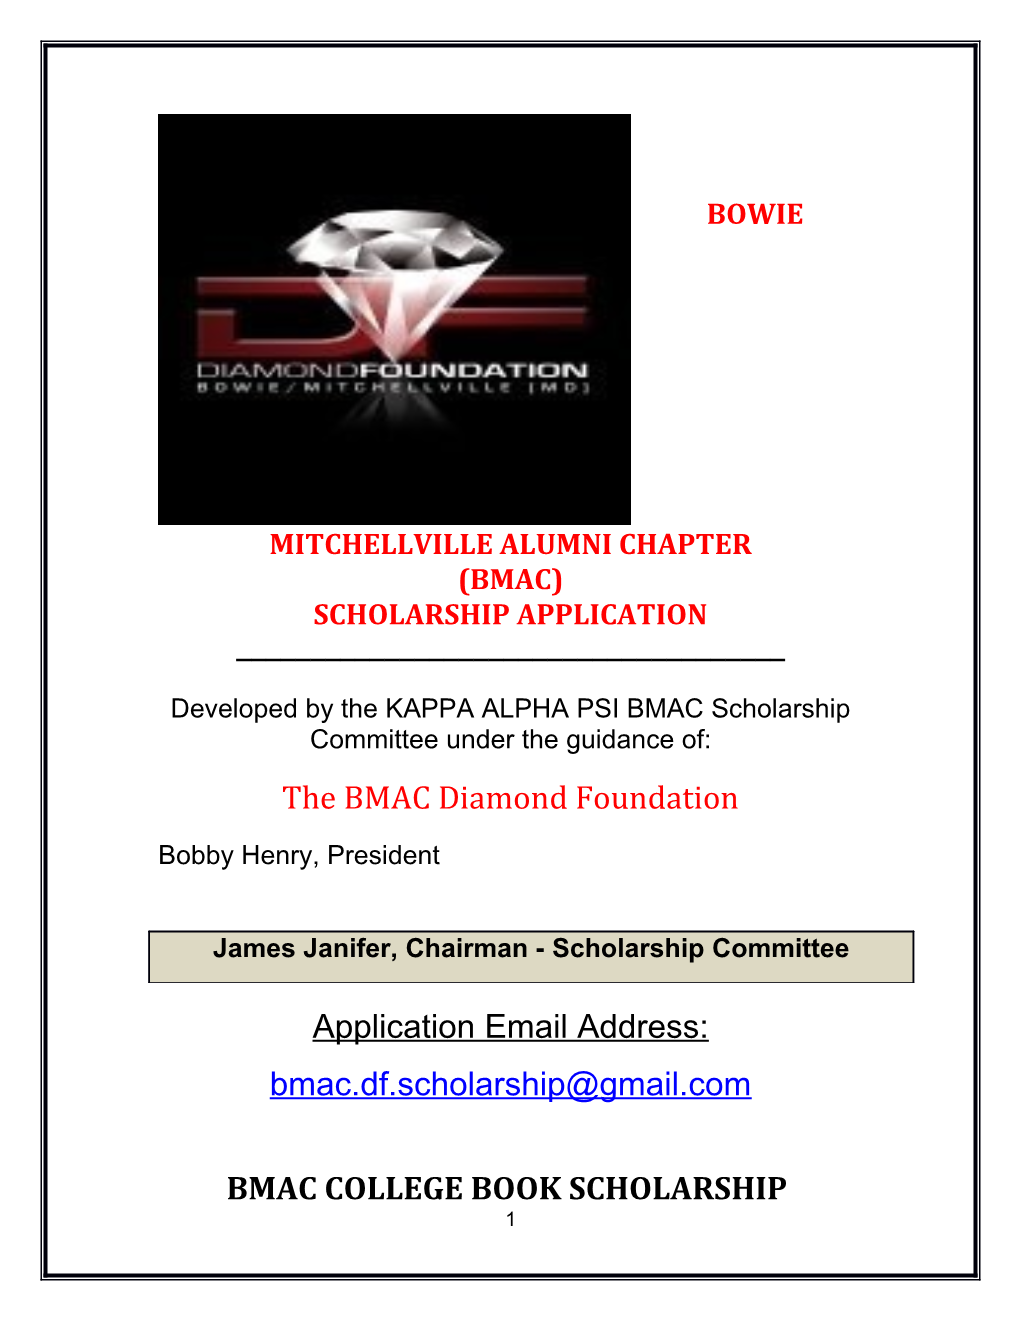 Bowie Mitchellville Alumni Chapter